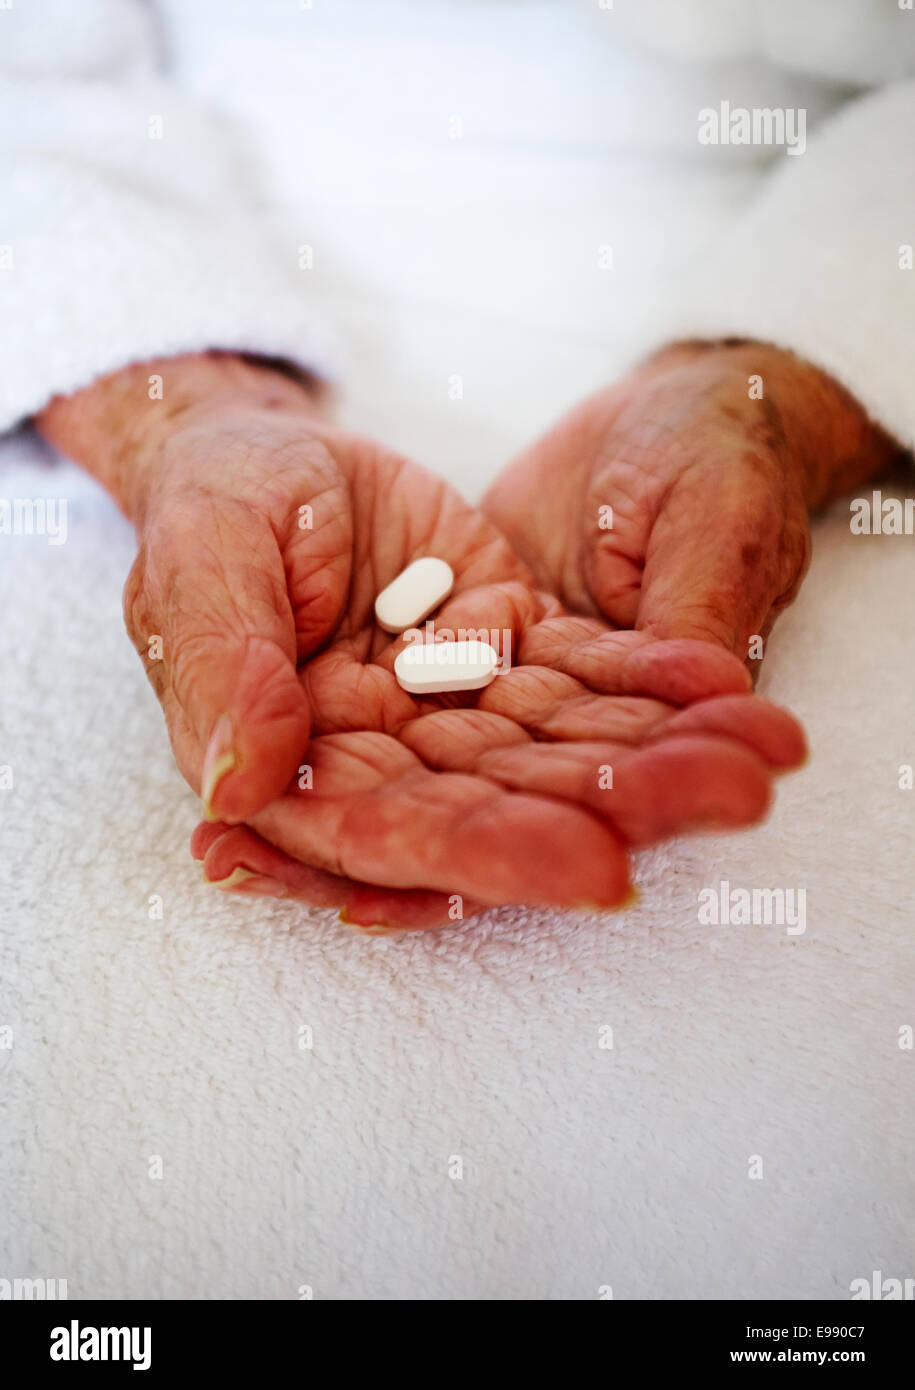 Personne Senior's hands holding médicaments - foyer de soins de santé. Banque D'Images